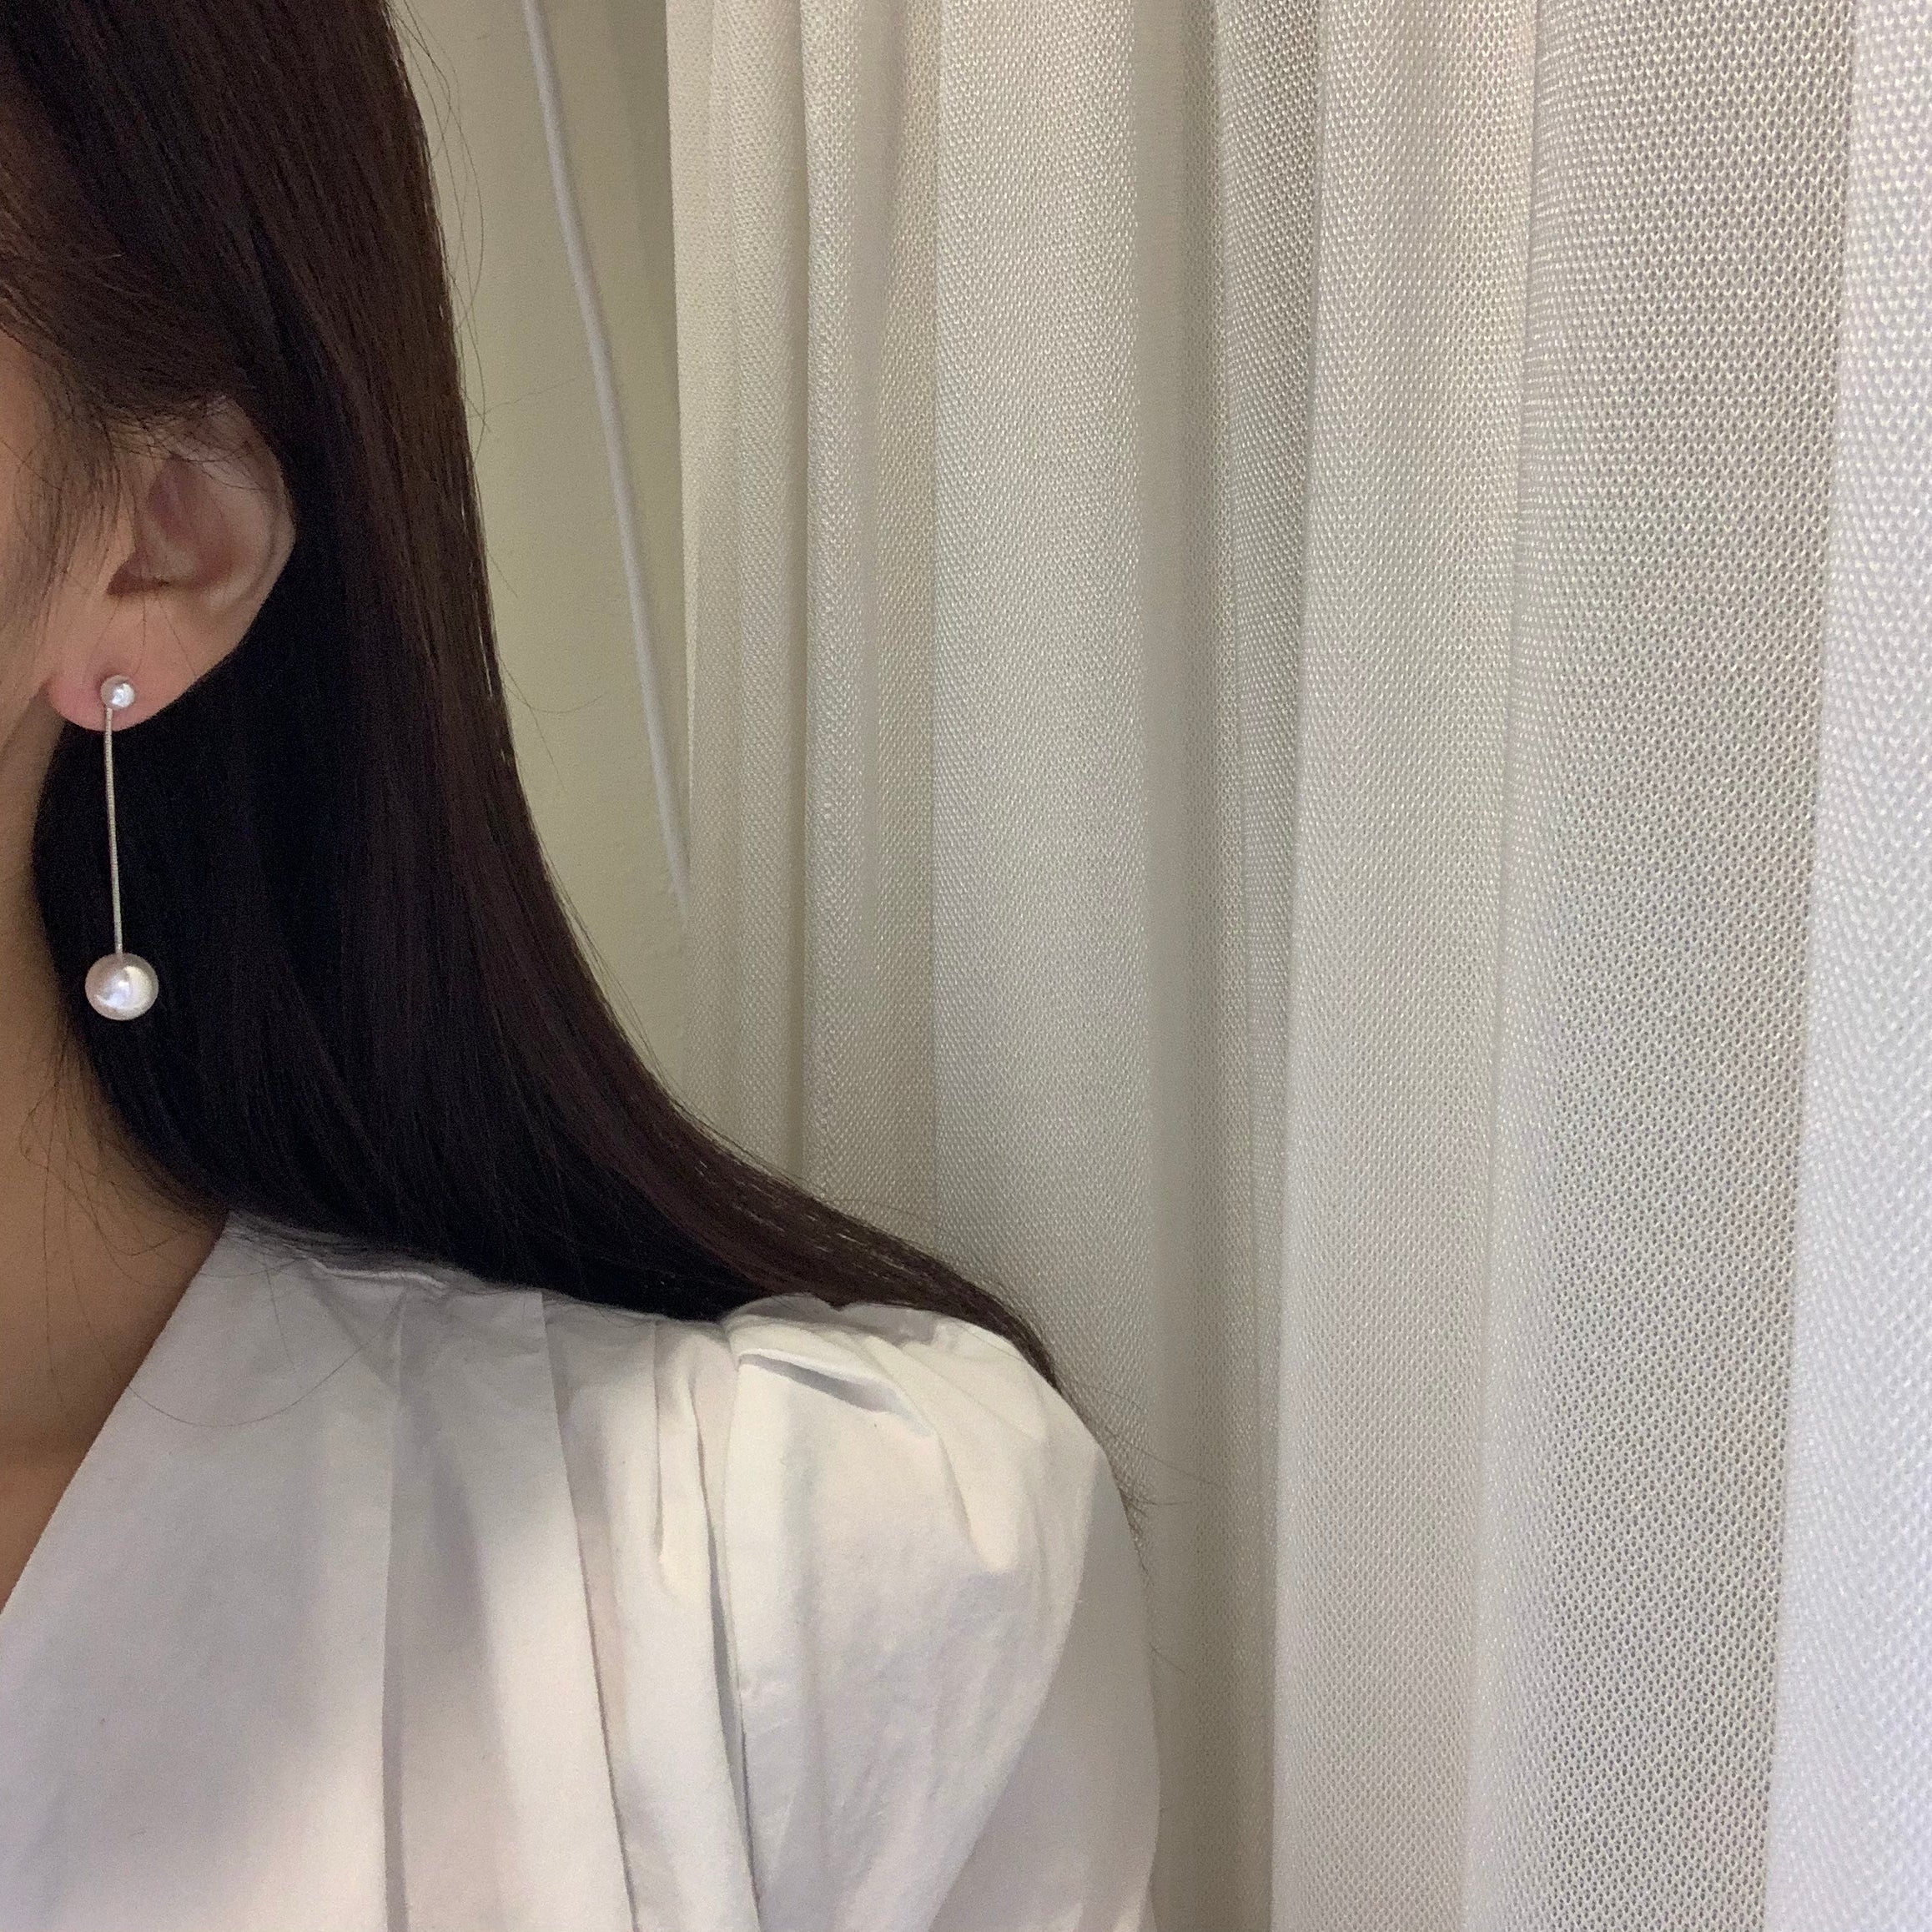 Two-In-One Dainty Pearl Dangle earrings - MARMELO USA